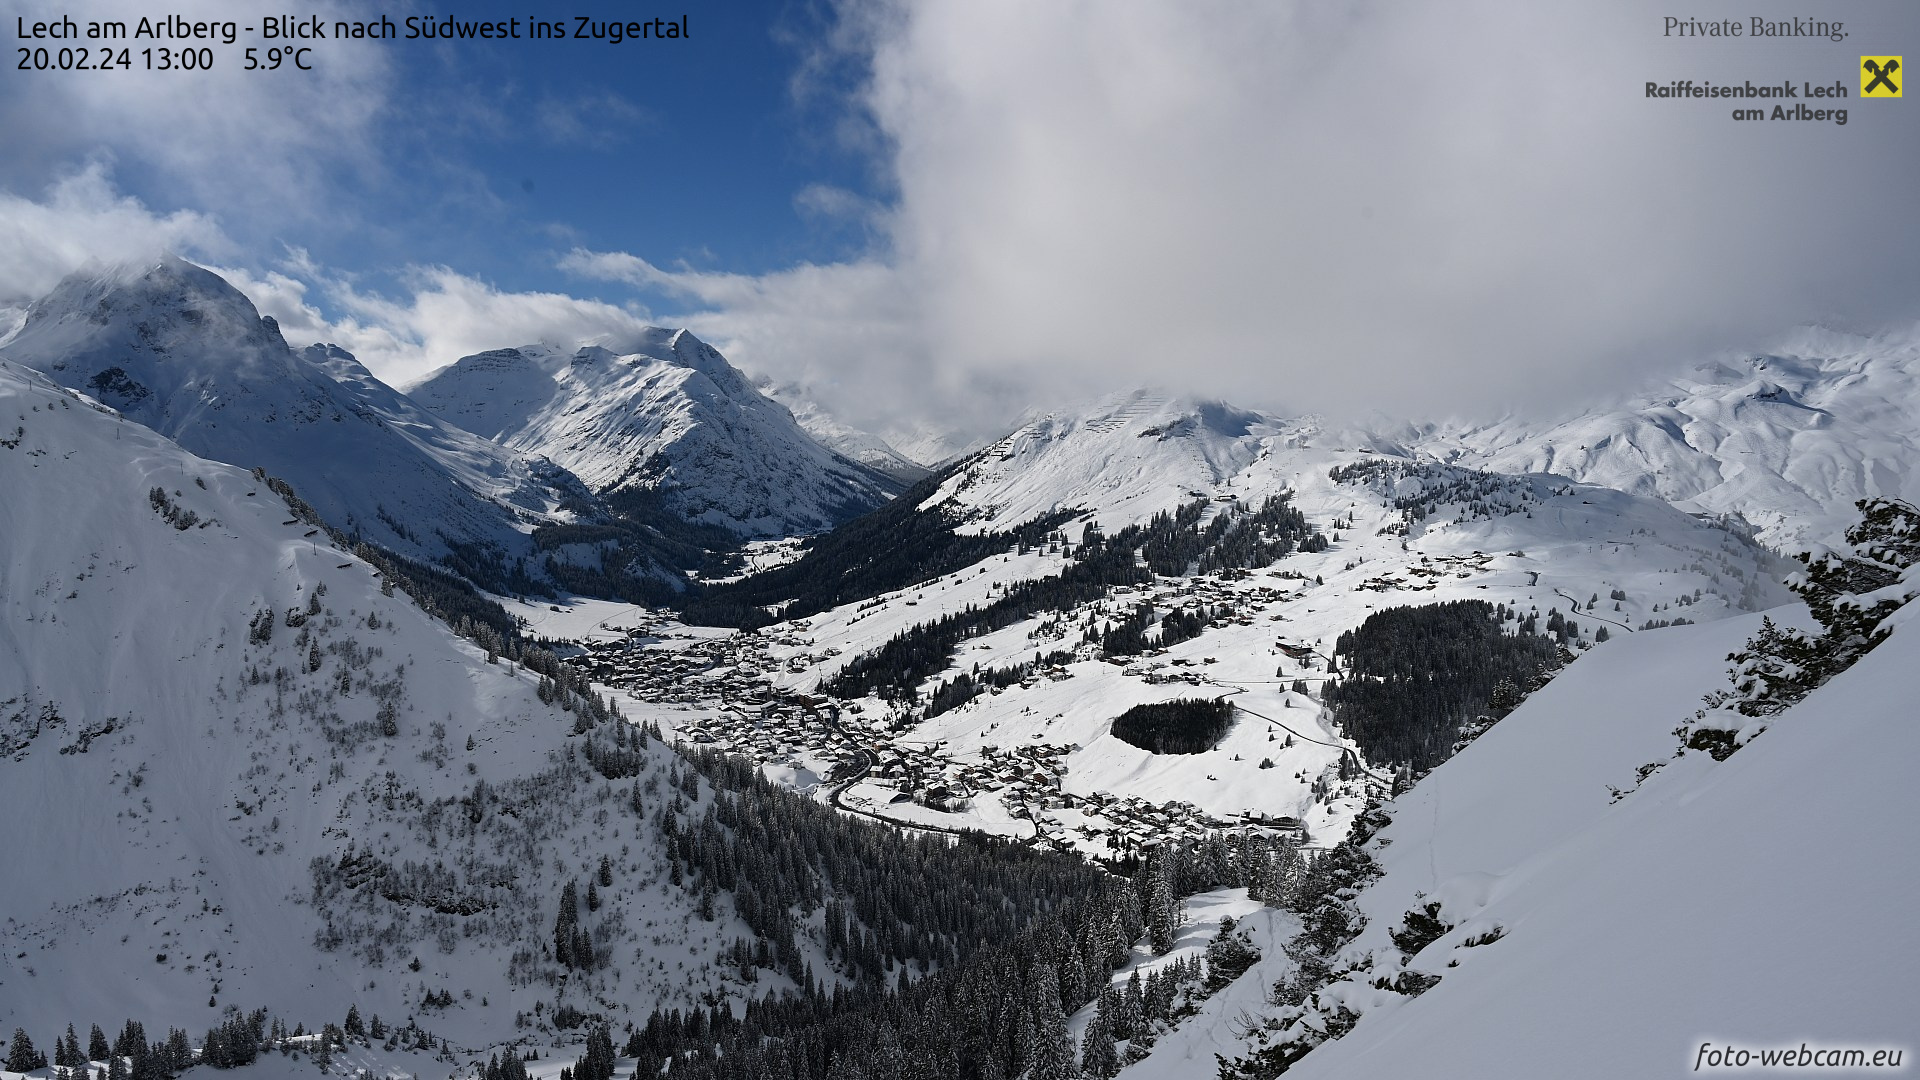 Lech-Zürs, havazás után, nyugaton már véget ért a havazás